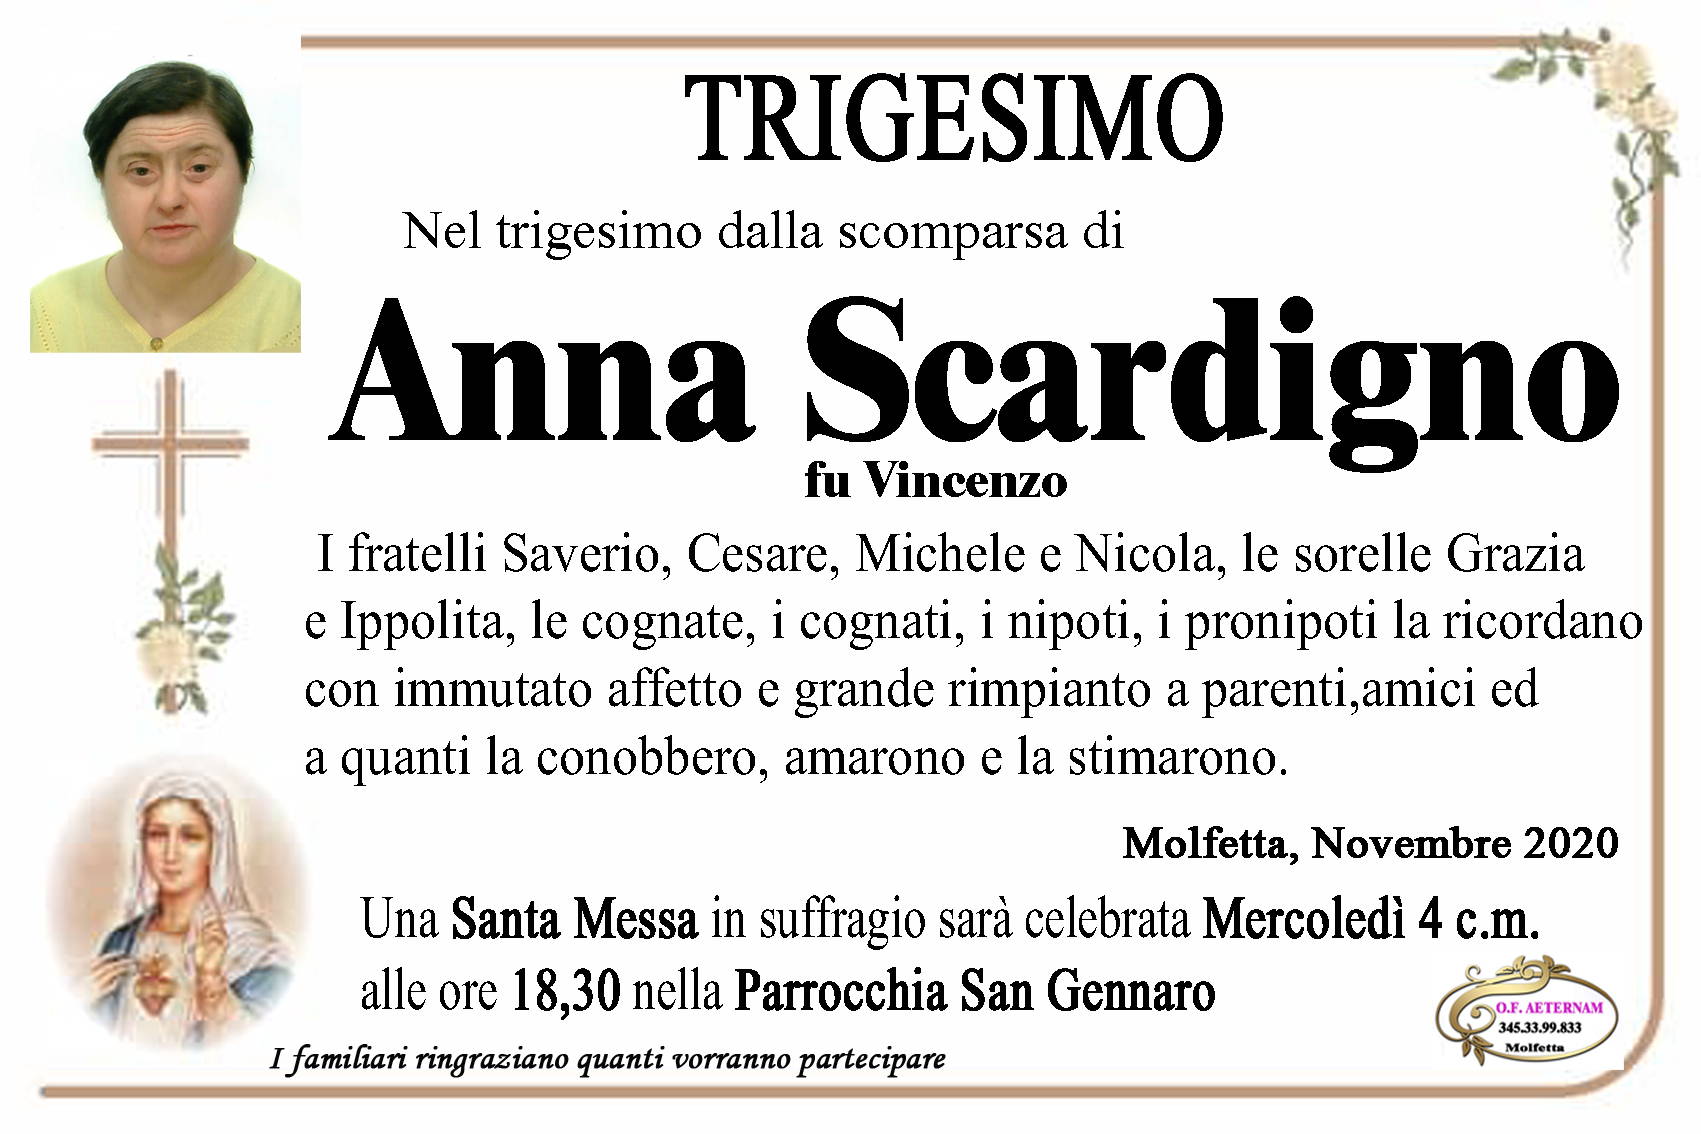 Anna Scardigno